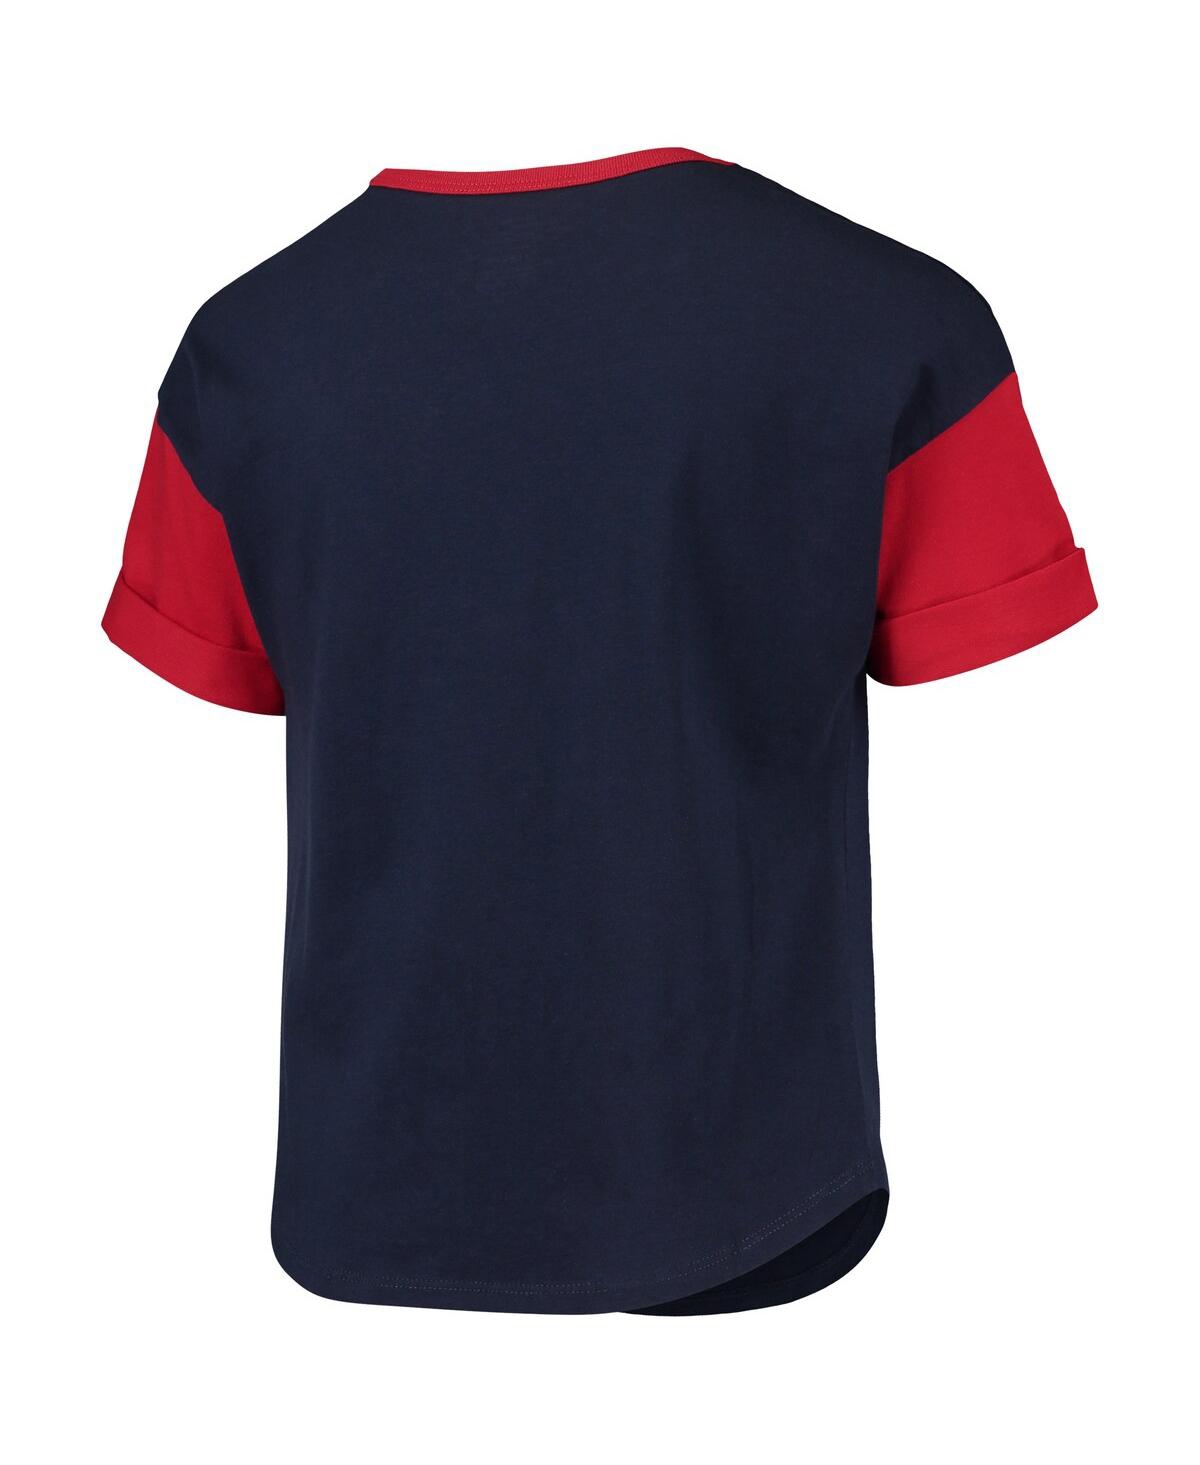 Shop Outerstuff Big Girls Navy St. Louis Cardinals Bleachers T-shirt